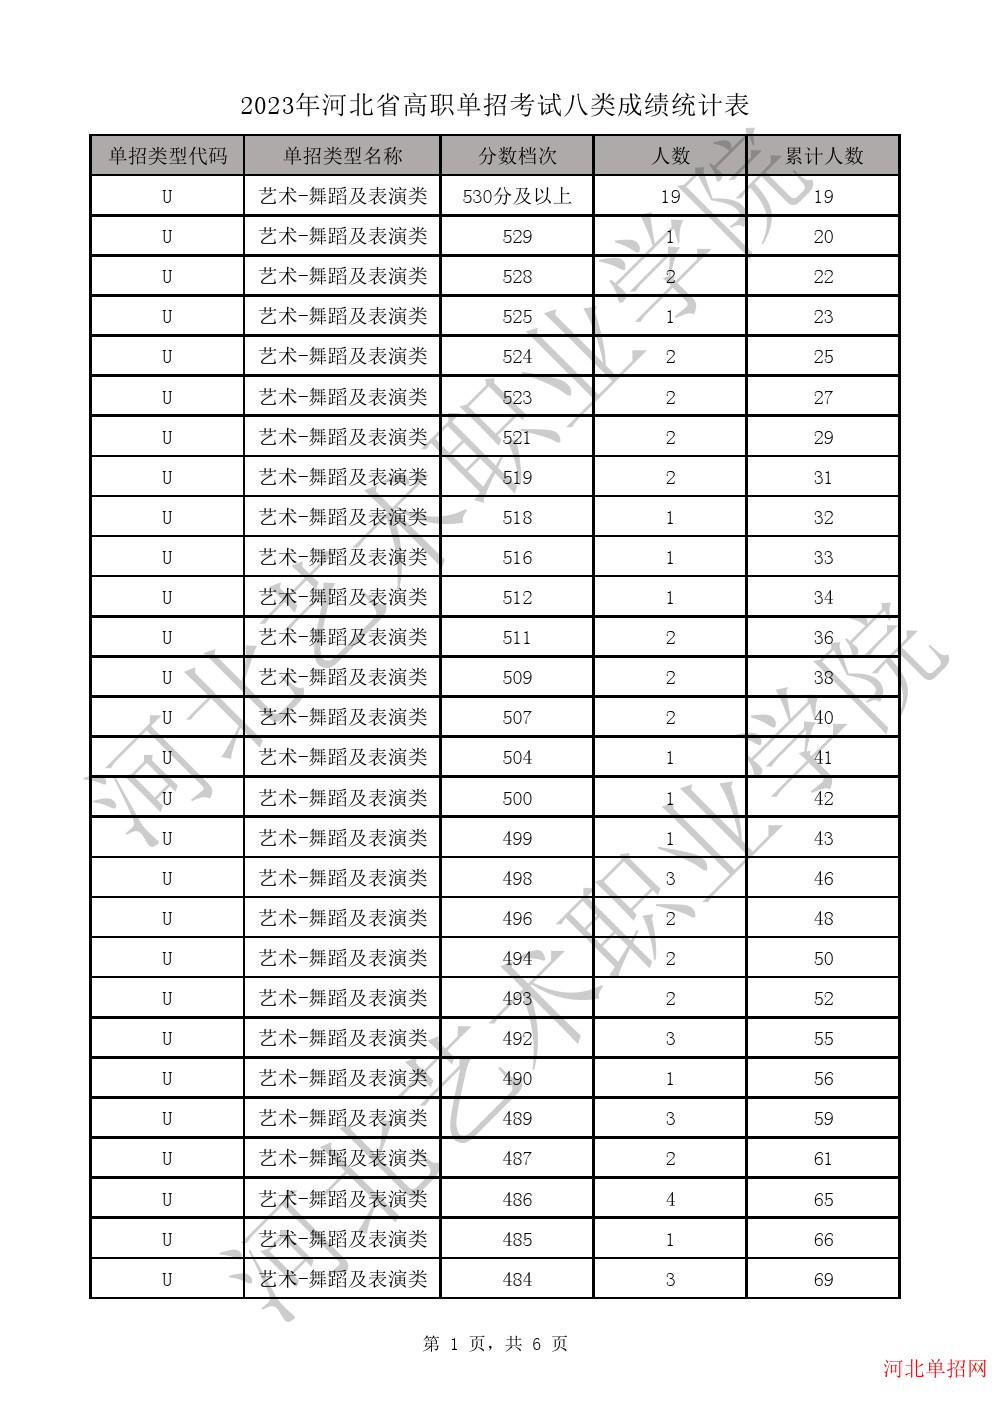 2023年河北省高职单招考试八类成绩统计